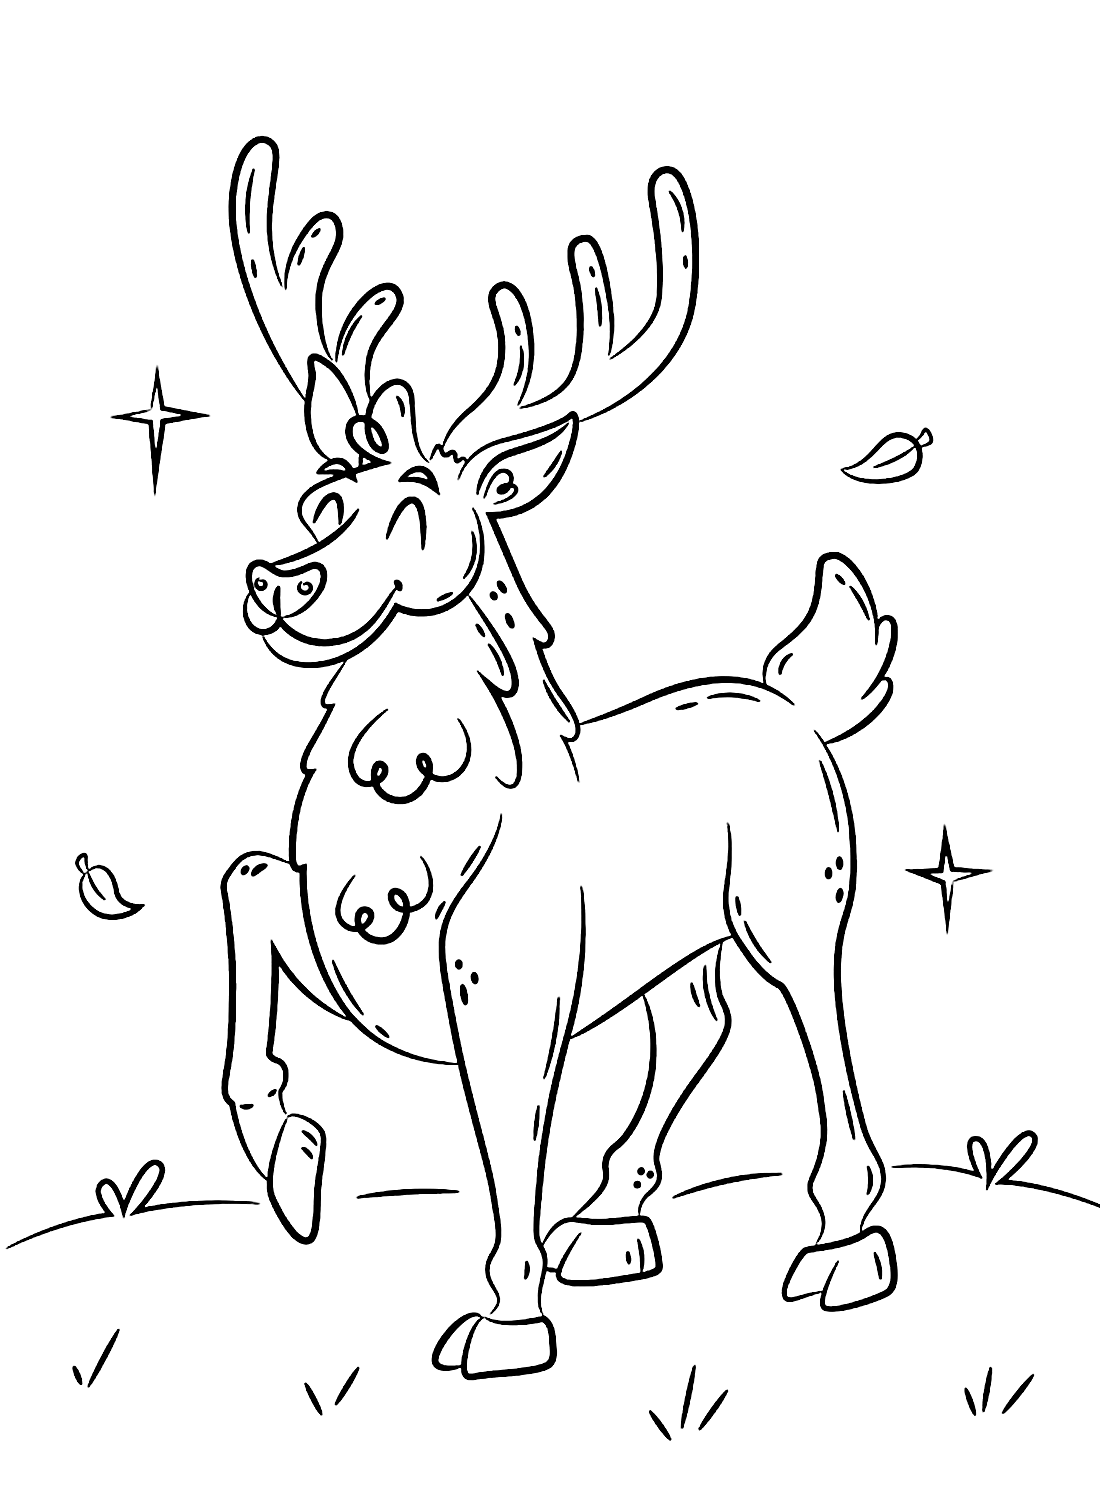 A Happy Deer Coloring Sheet from Deer